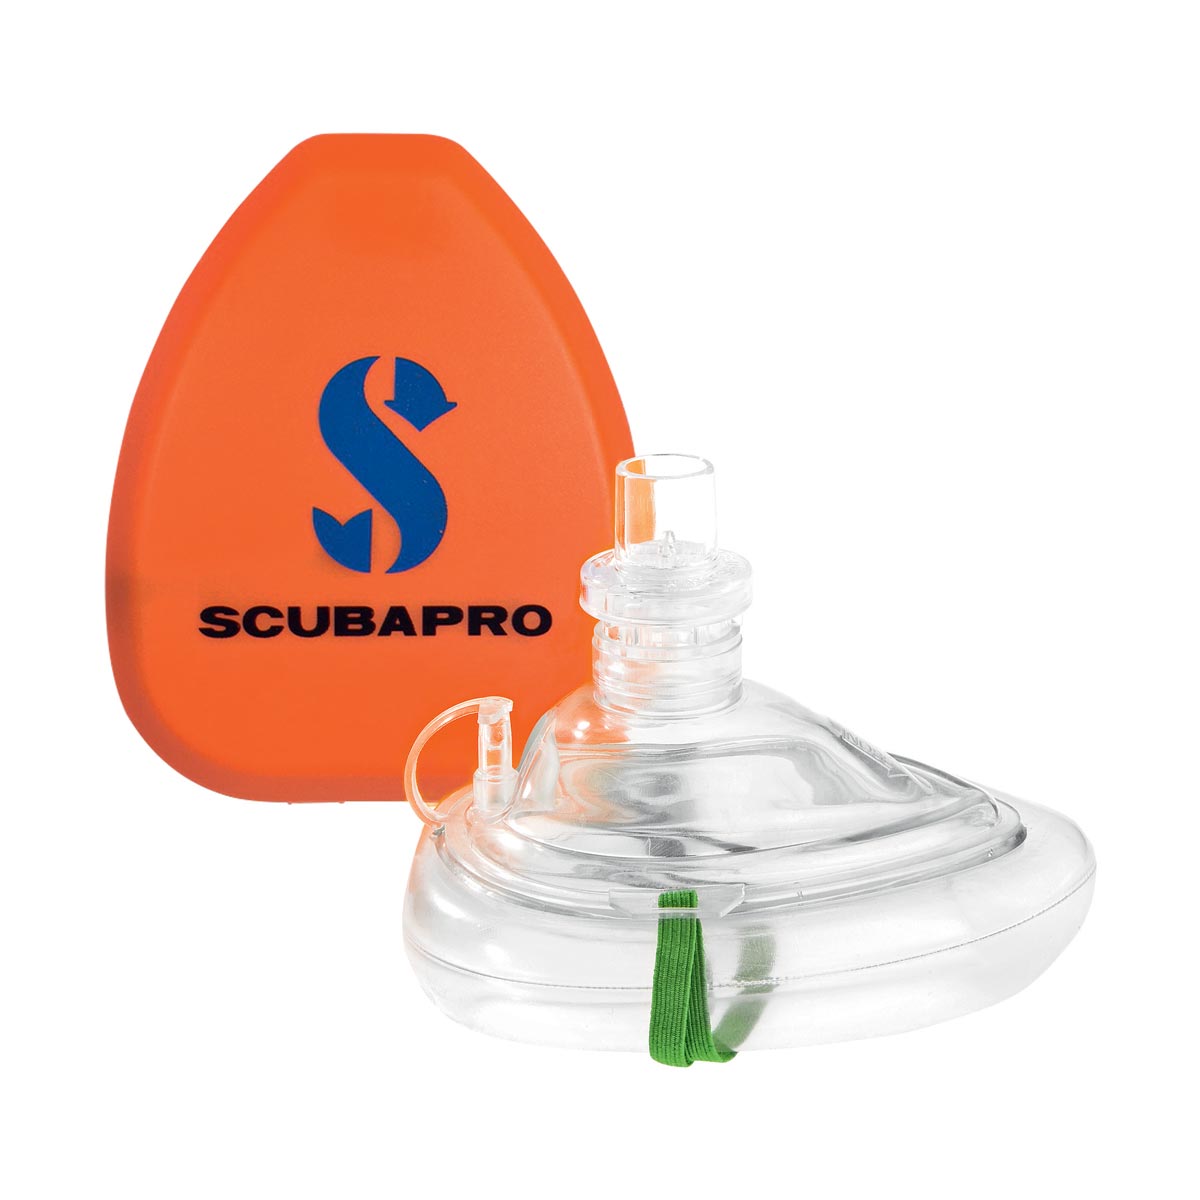 Scubapro Pocket CPR Mask by Scubapro